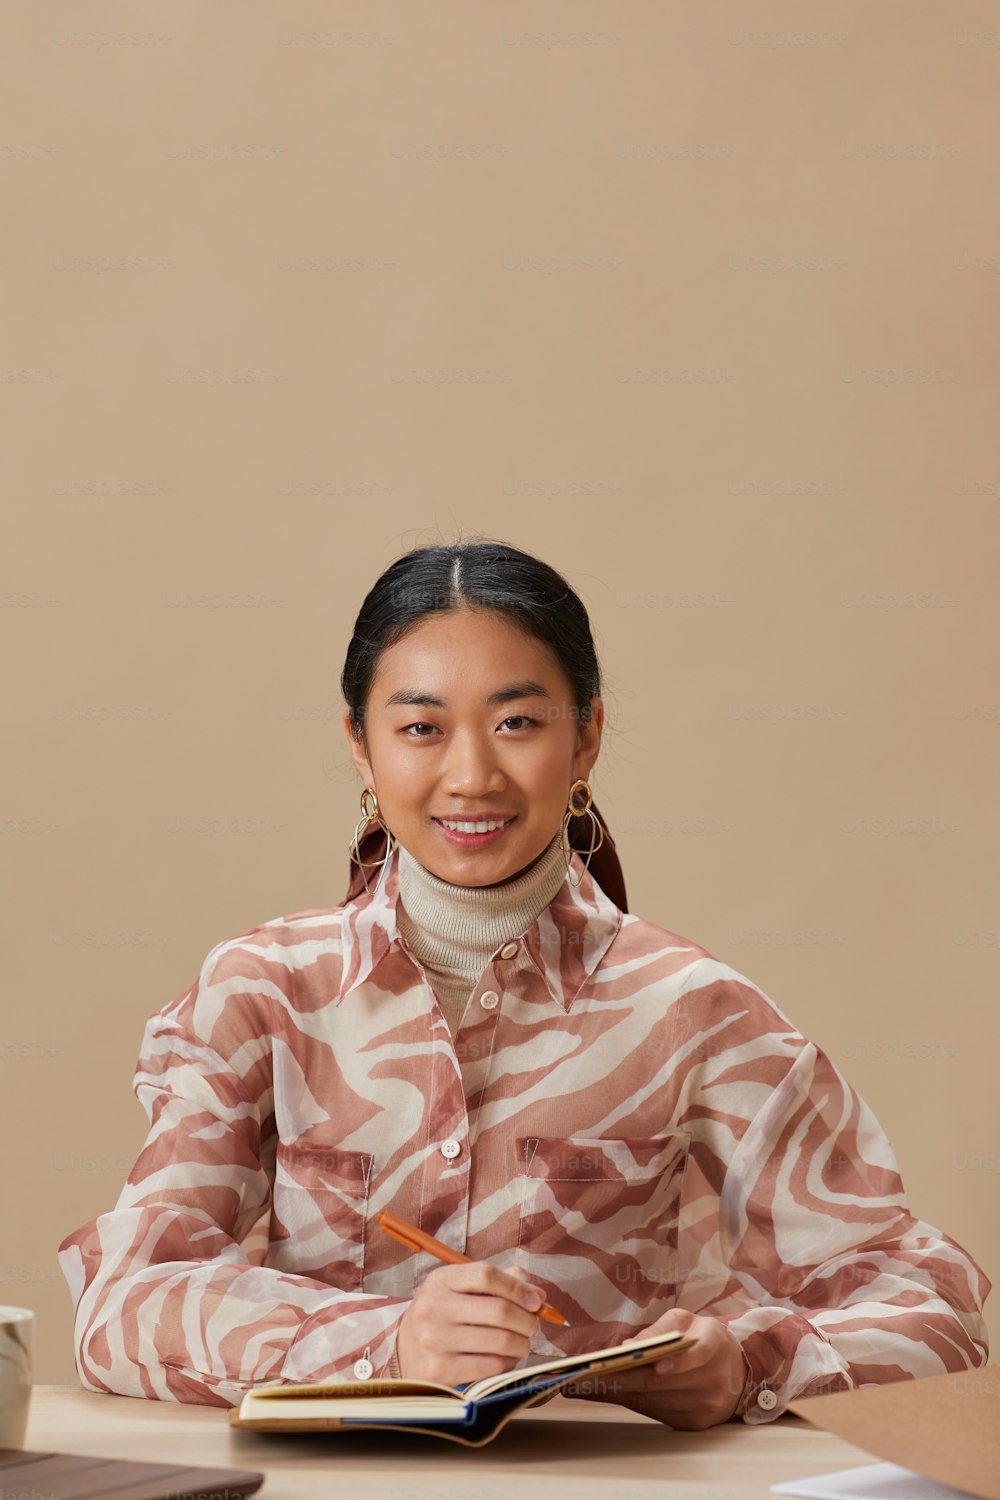 테이블에 앉아 메모장에 글을 쓰는 동안 카메라에 미소 짓는 젊은 아시아 여성의 초상화